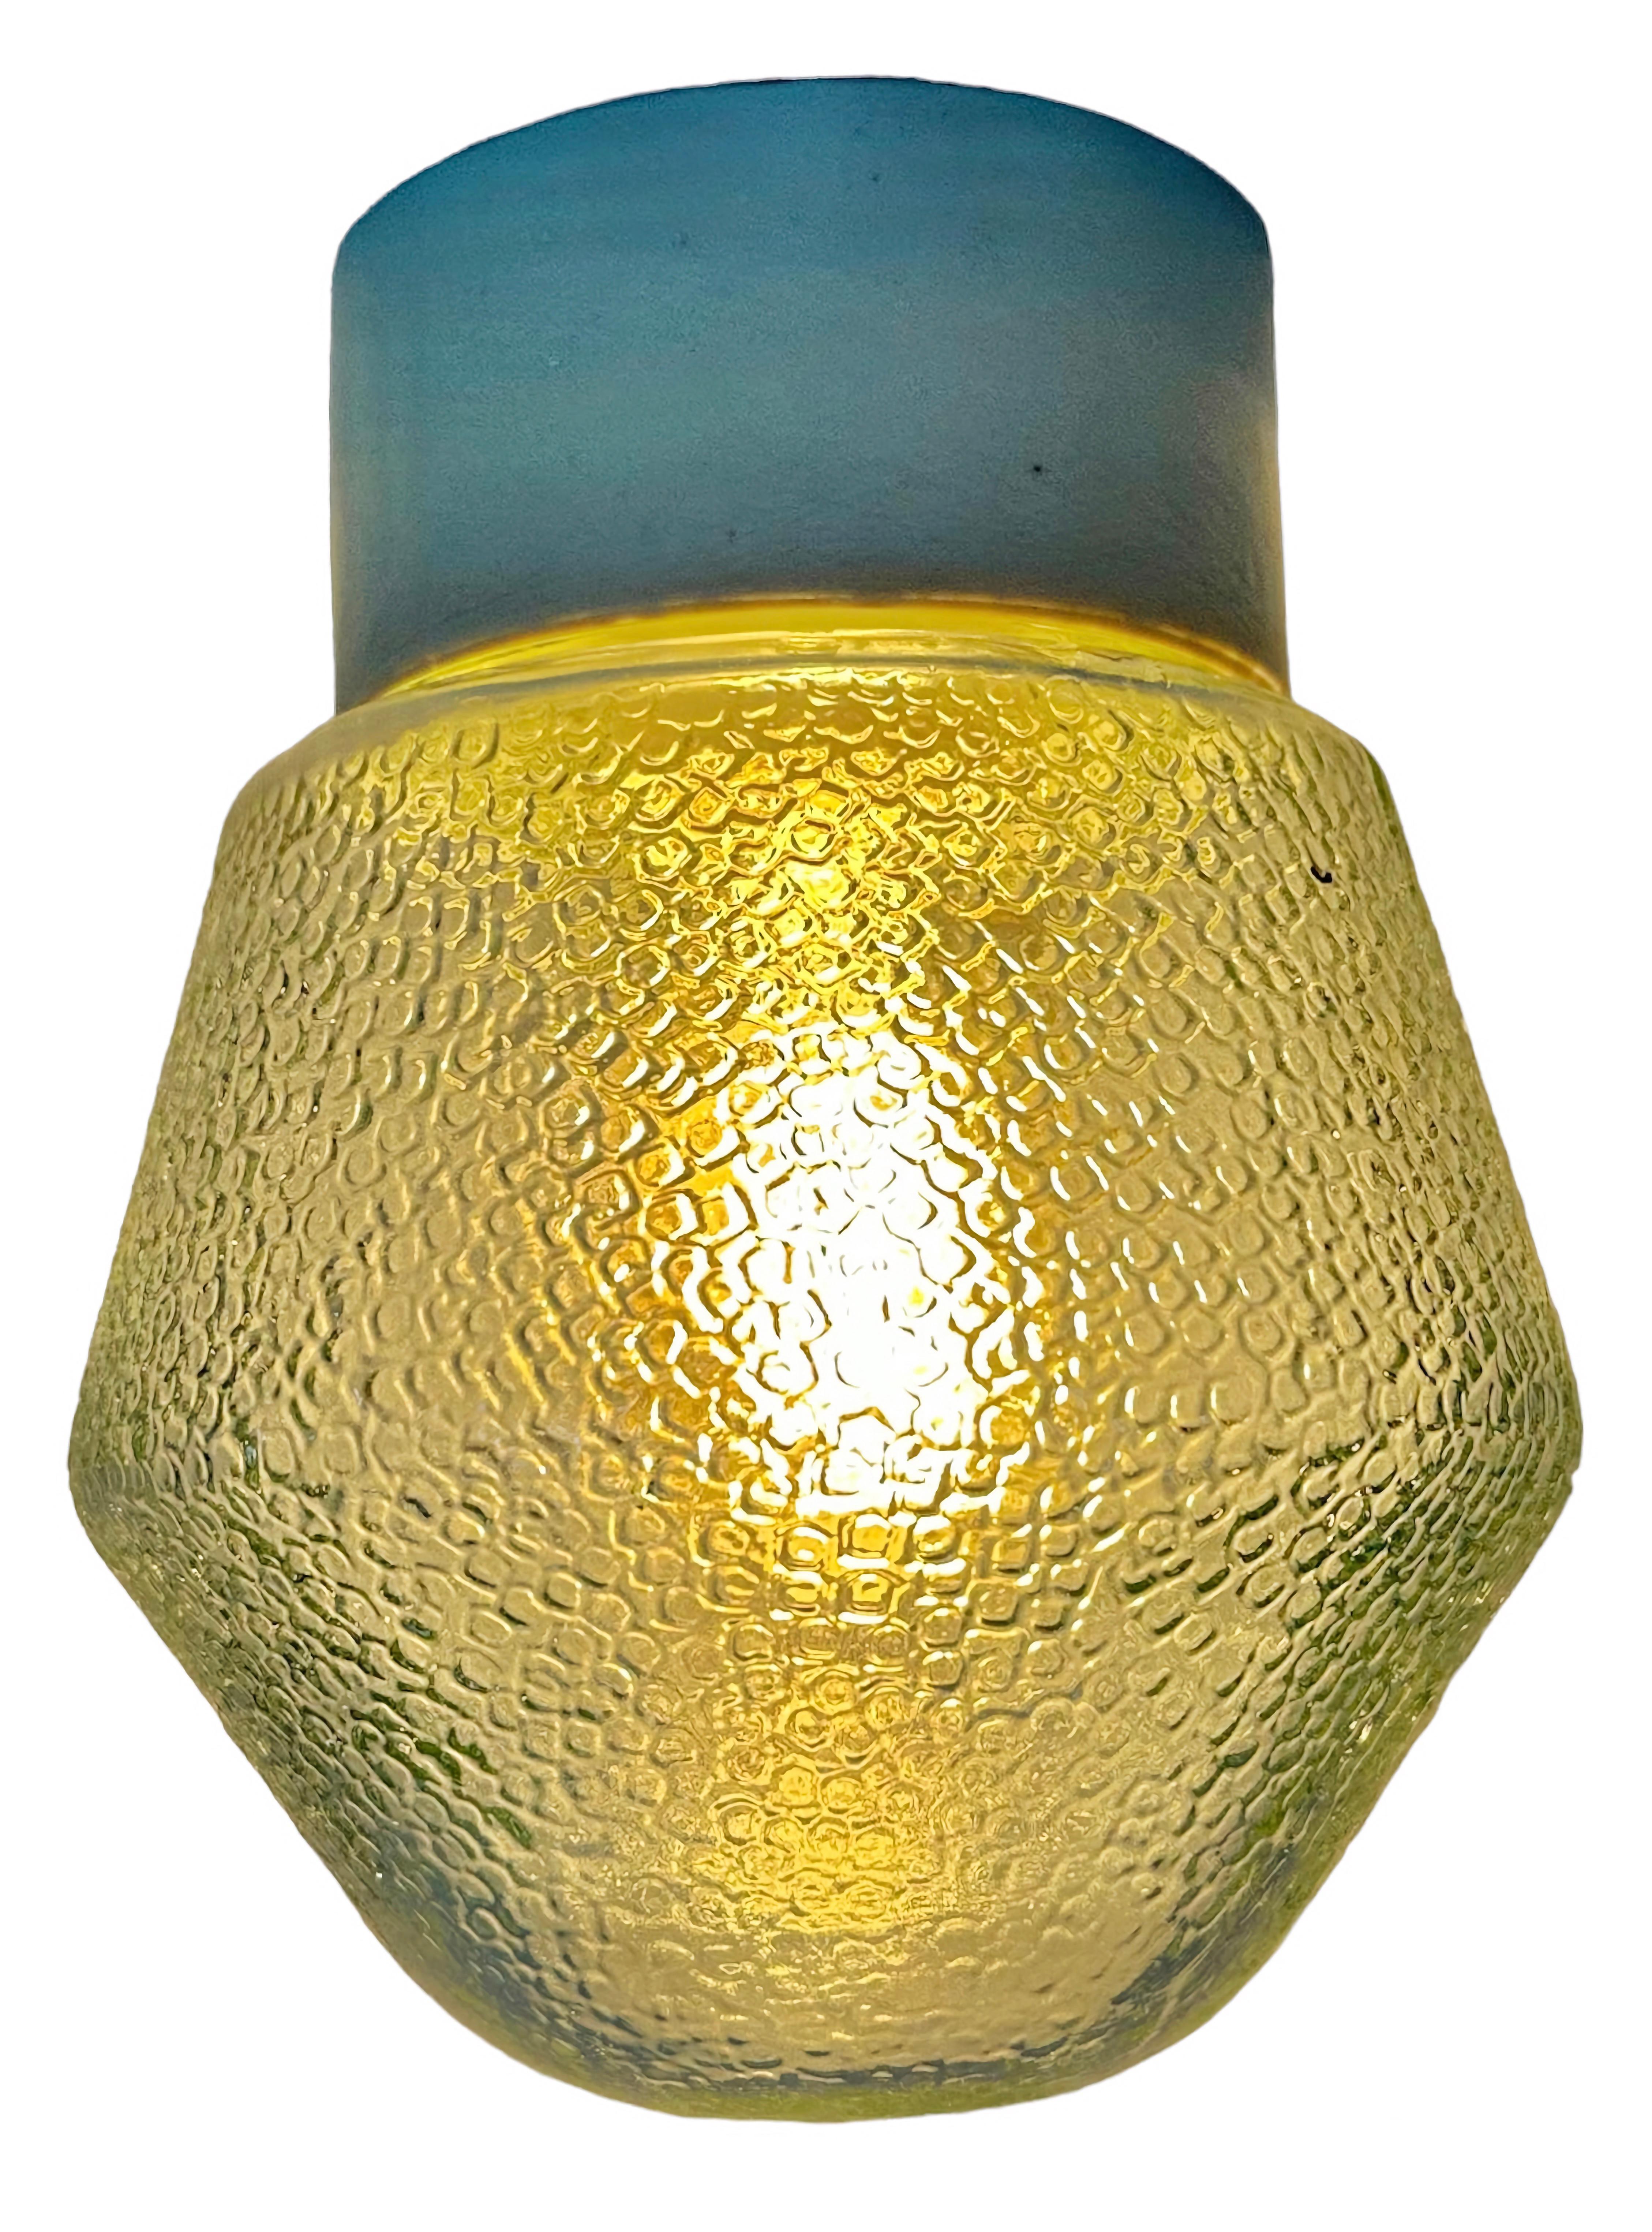 Lampe industrielle vintage fabriquée en Pologne dans les années 1970. Whiting se caractérise par une fixation au plafond en porcelaine blanche et un couvercle en verre dépoli. La douille est compatible avec les ampoules E27/E 26. Un nouveau fil. Le